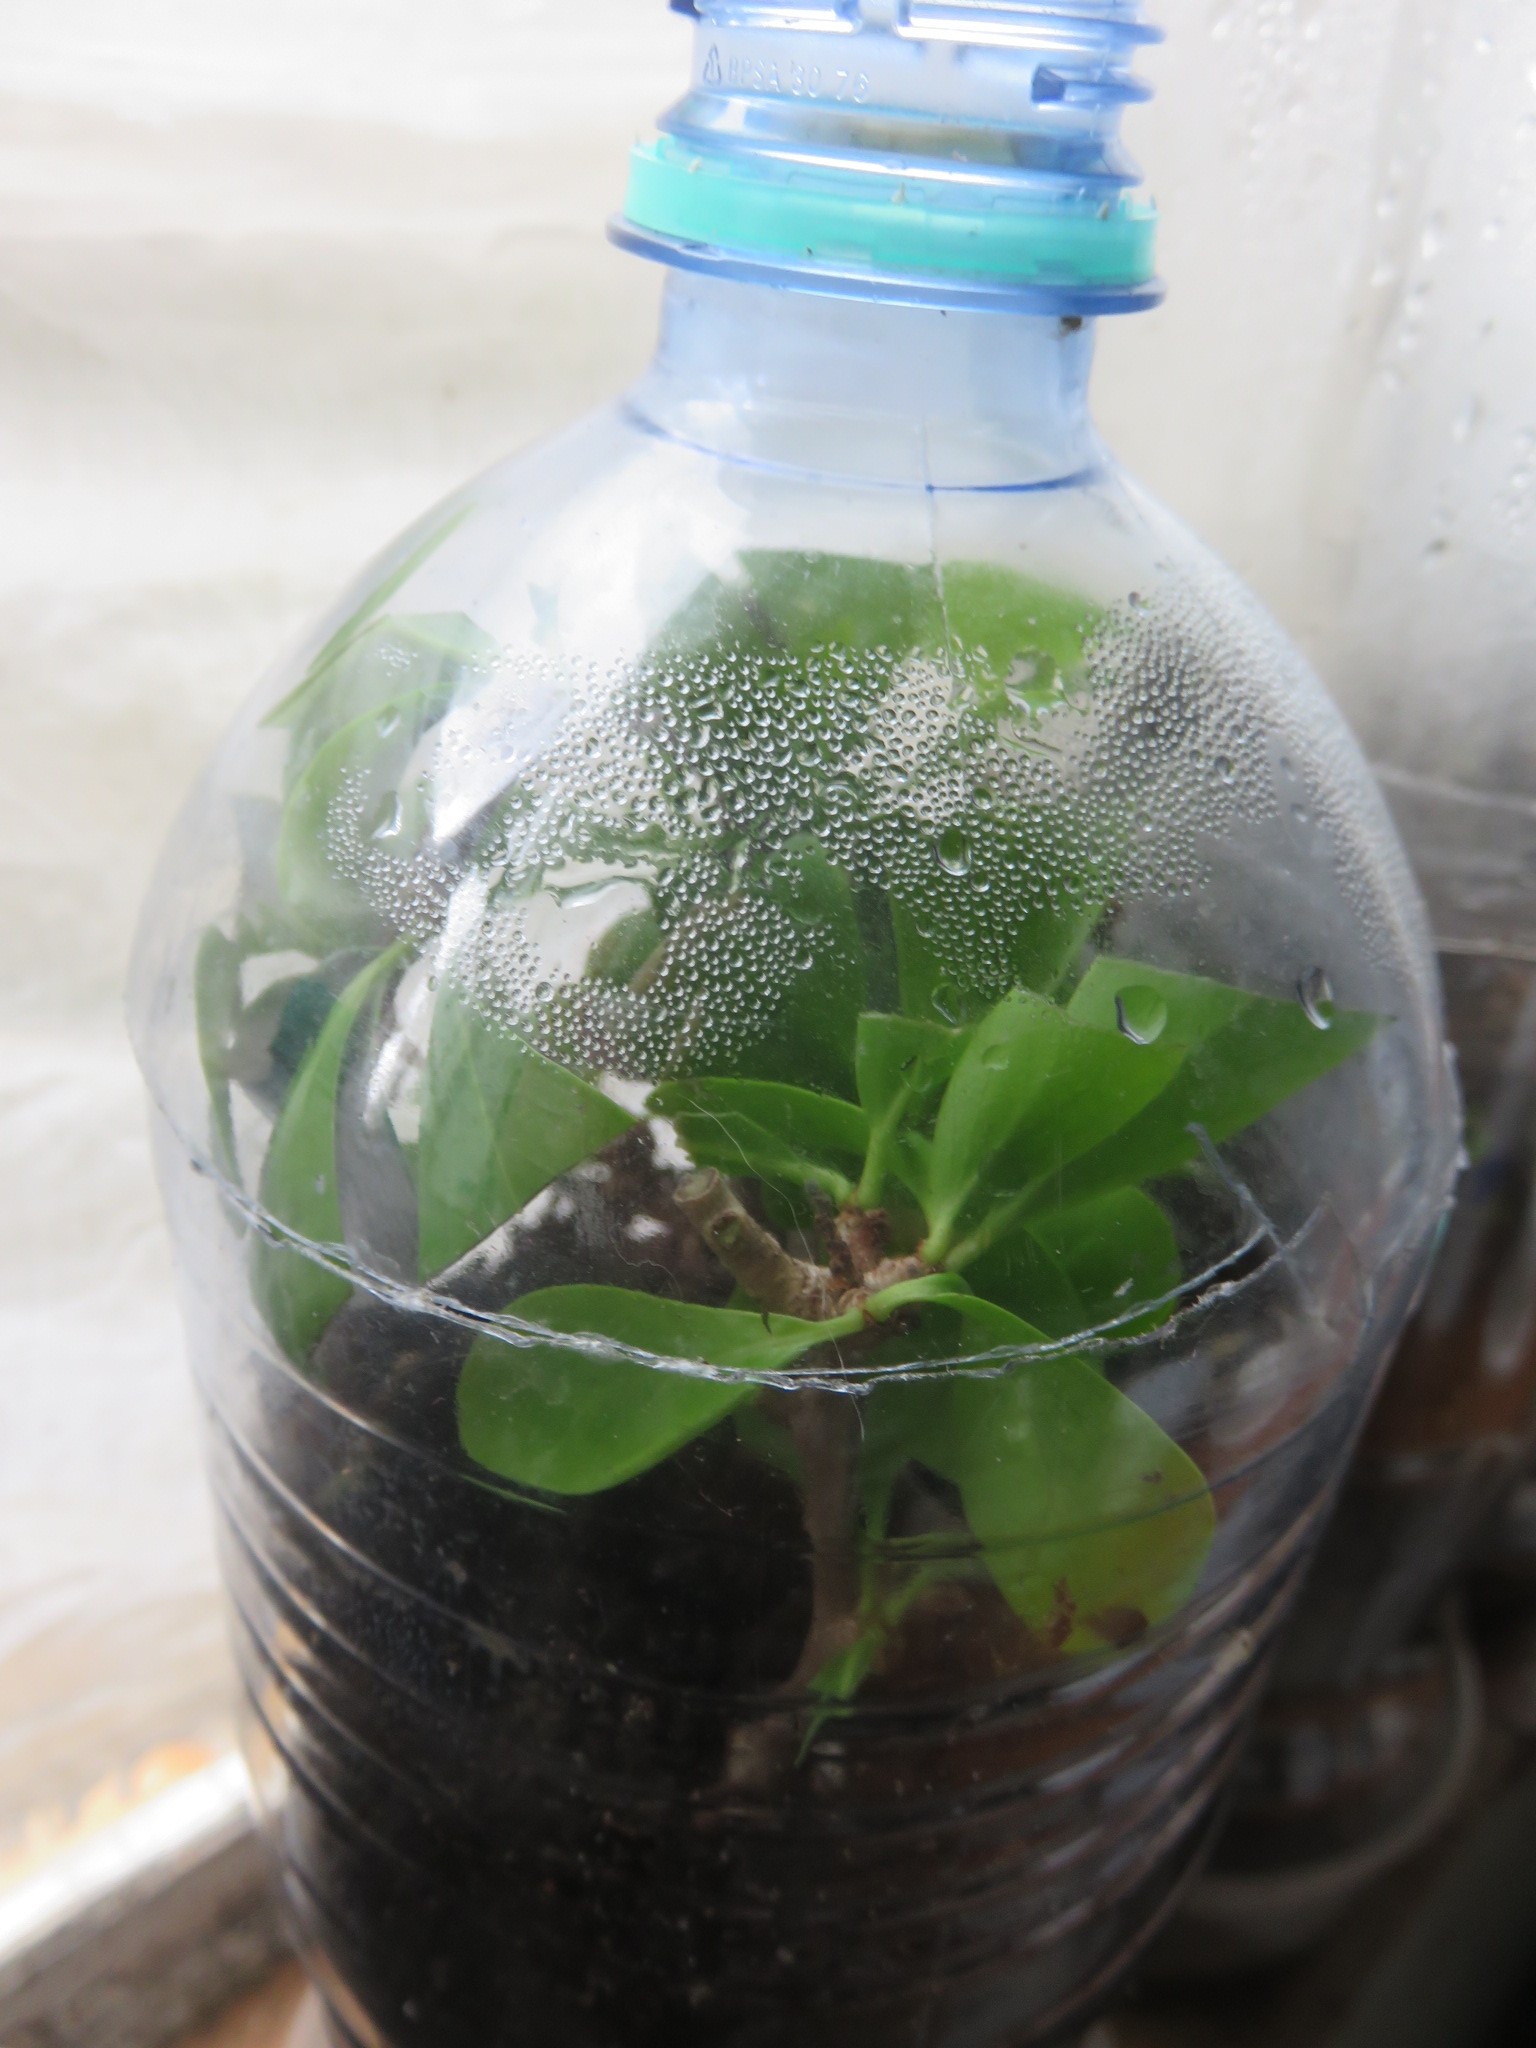 Trying to propagate cuttings in a mini terrarium